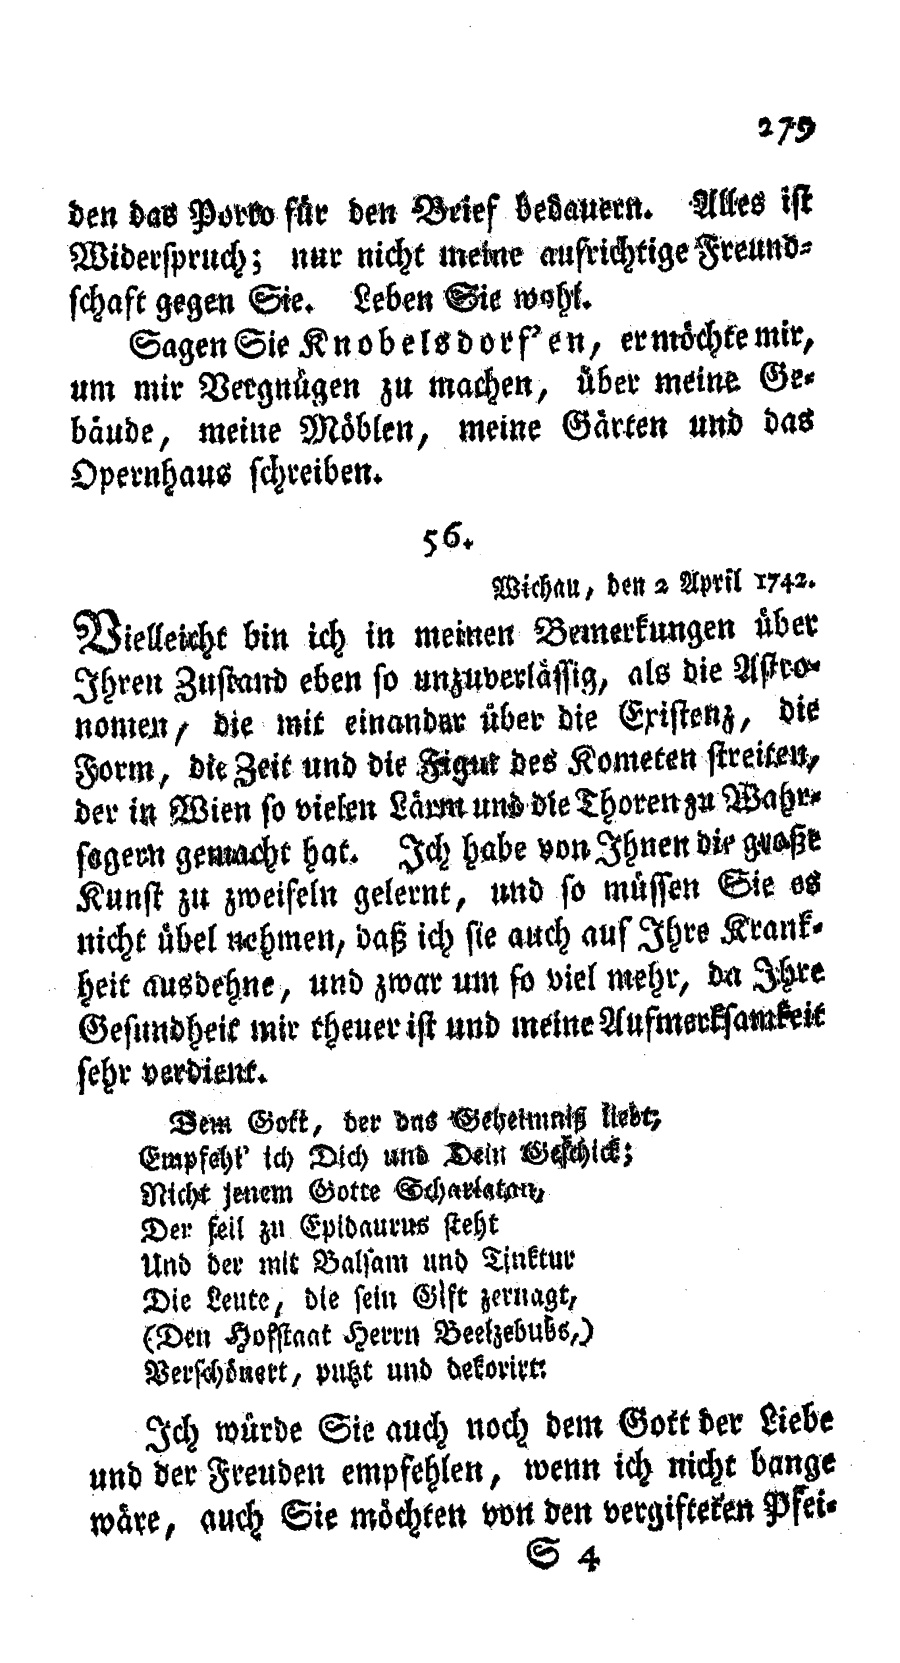 S. 279, Obj. 2